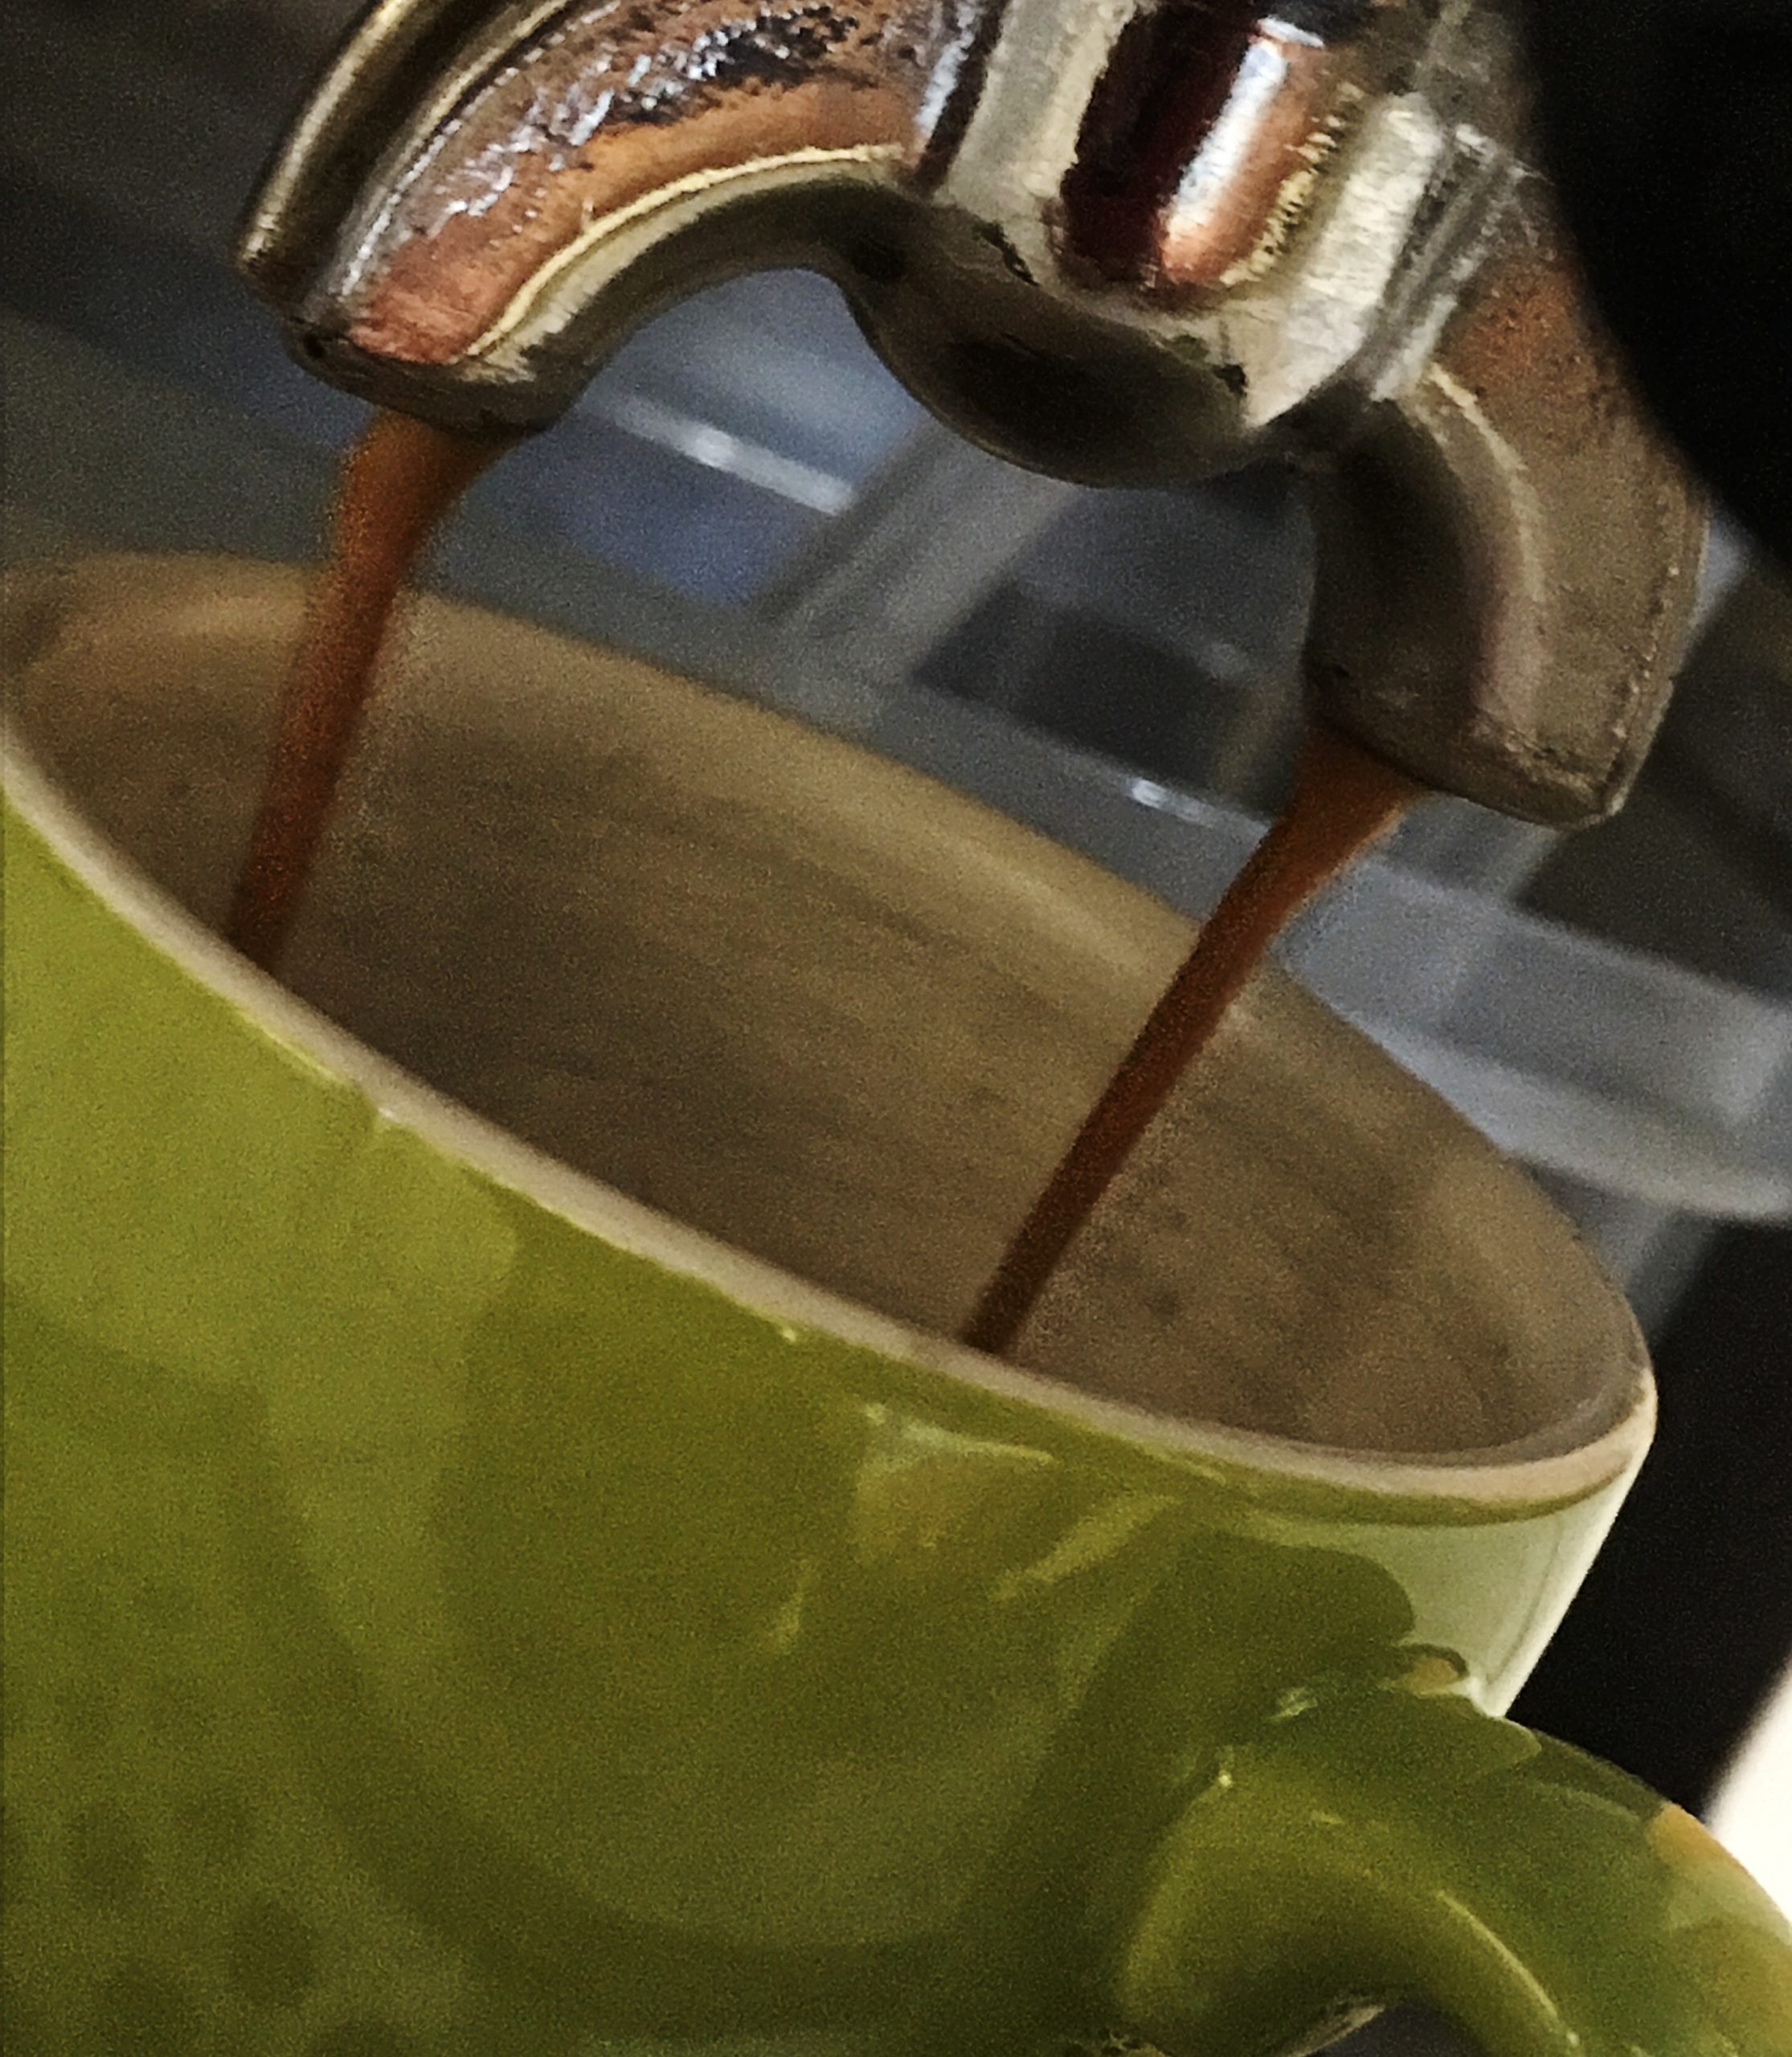 Espresso läuft aus der Siebträgermaschine in eine grüne Tasse